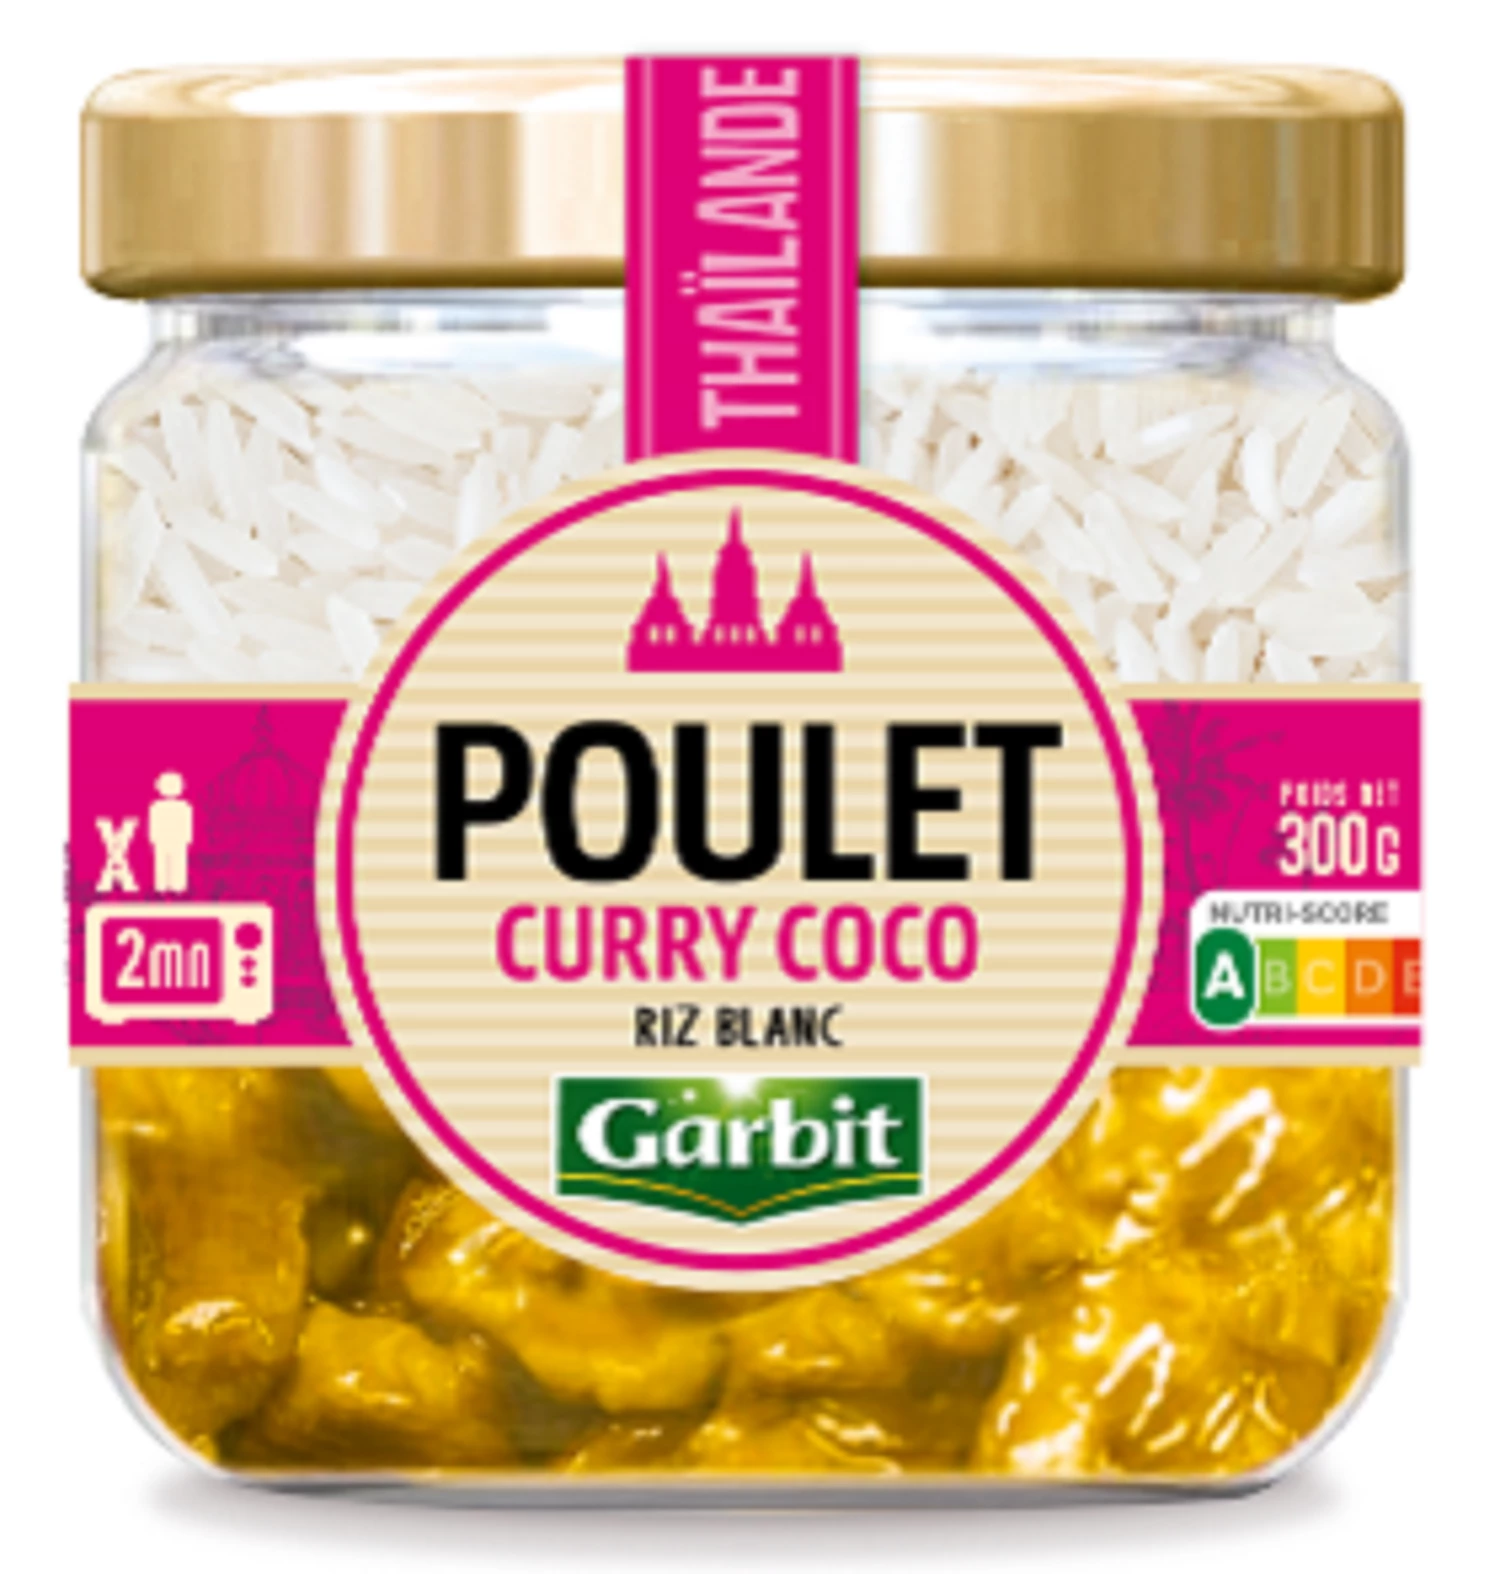 Poulet Curry Coco, 300g - GARBIT